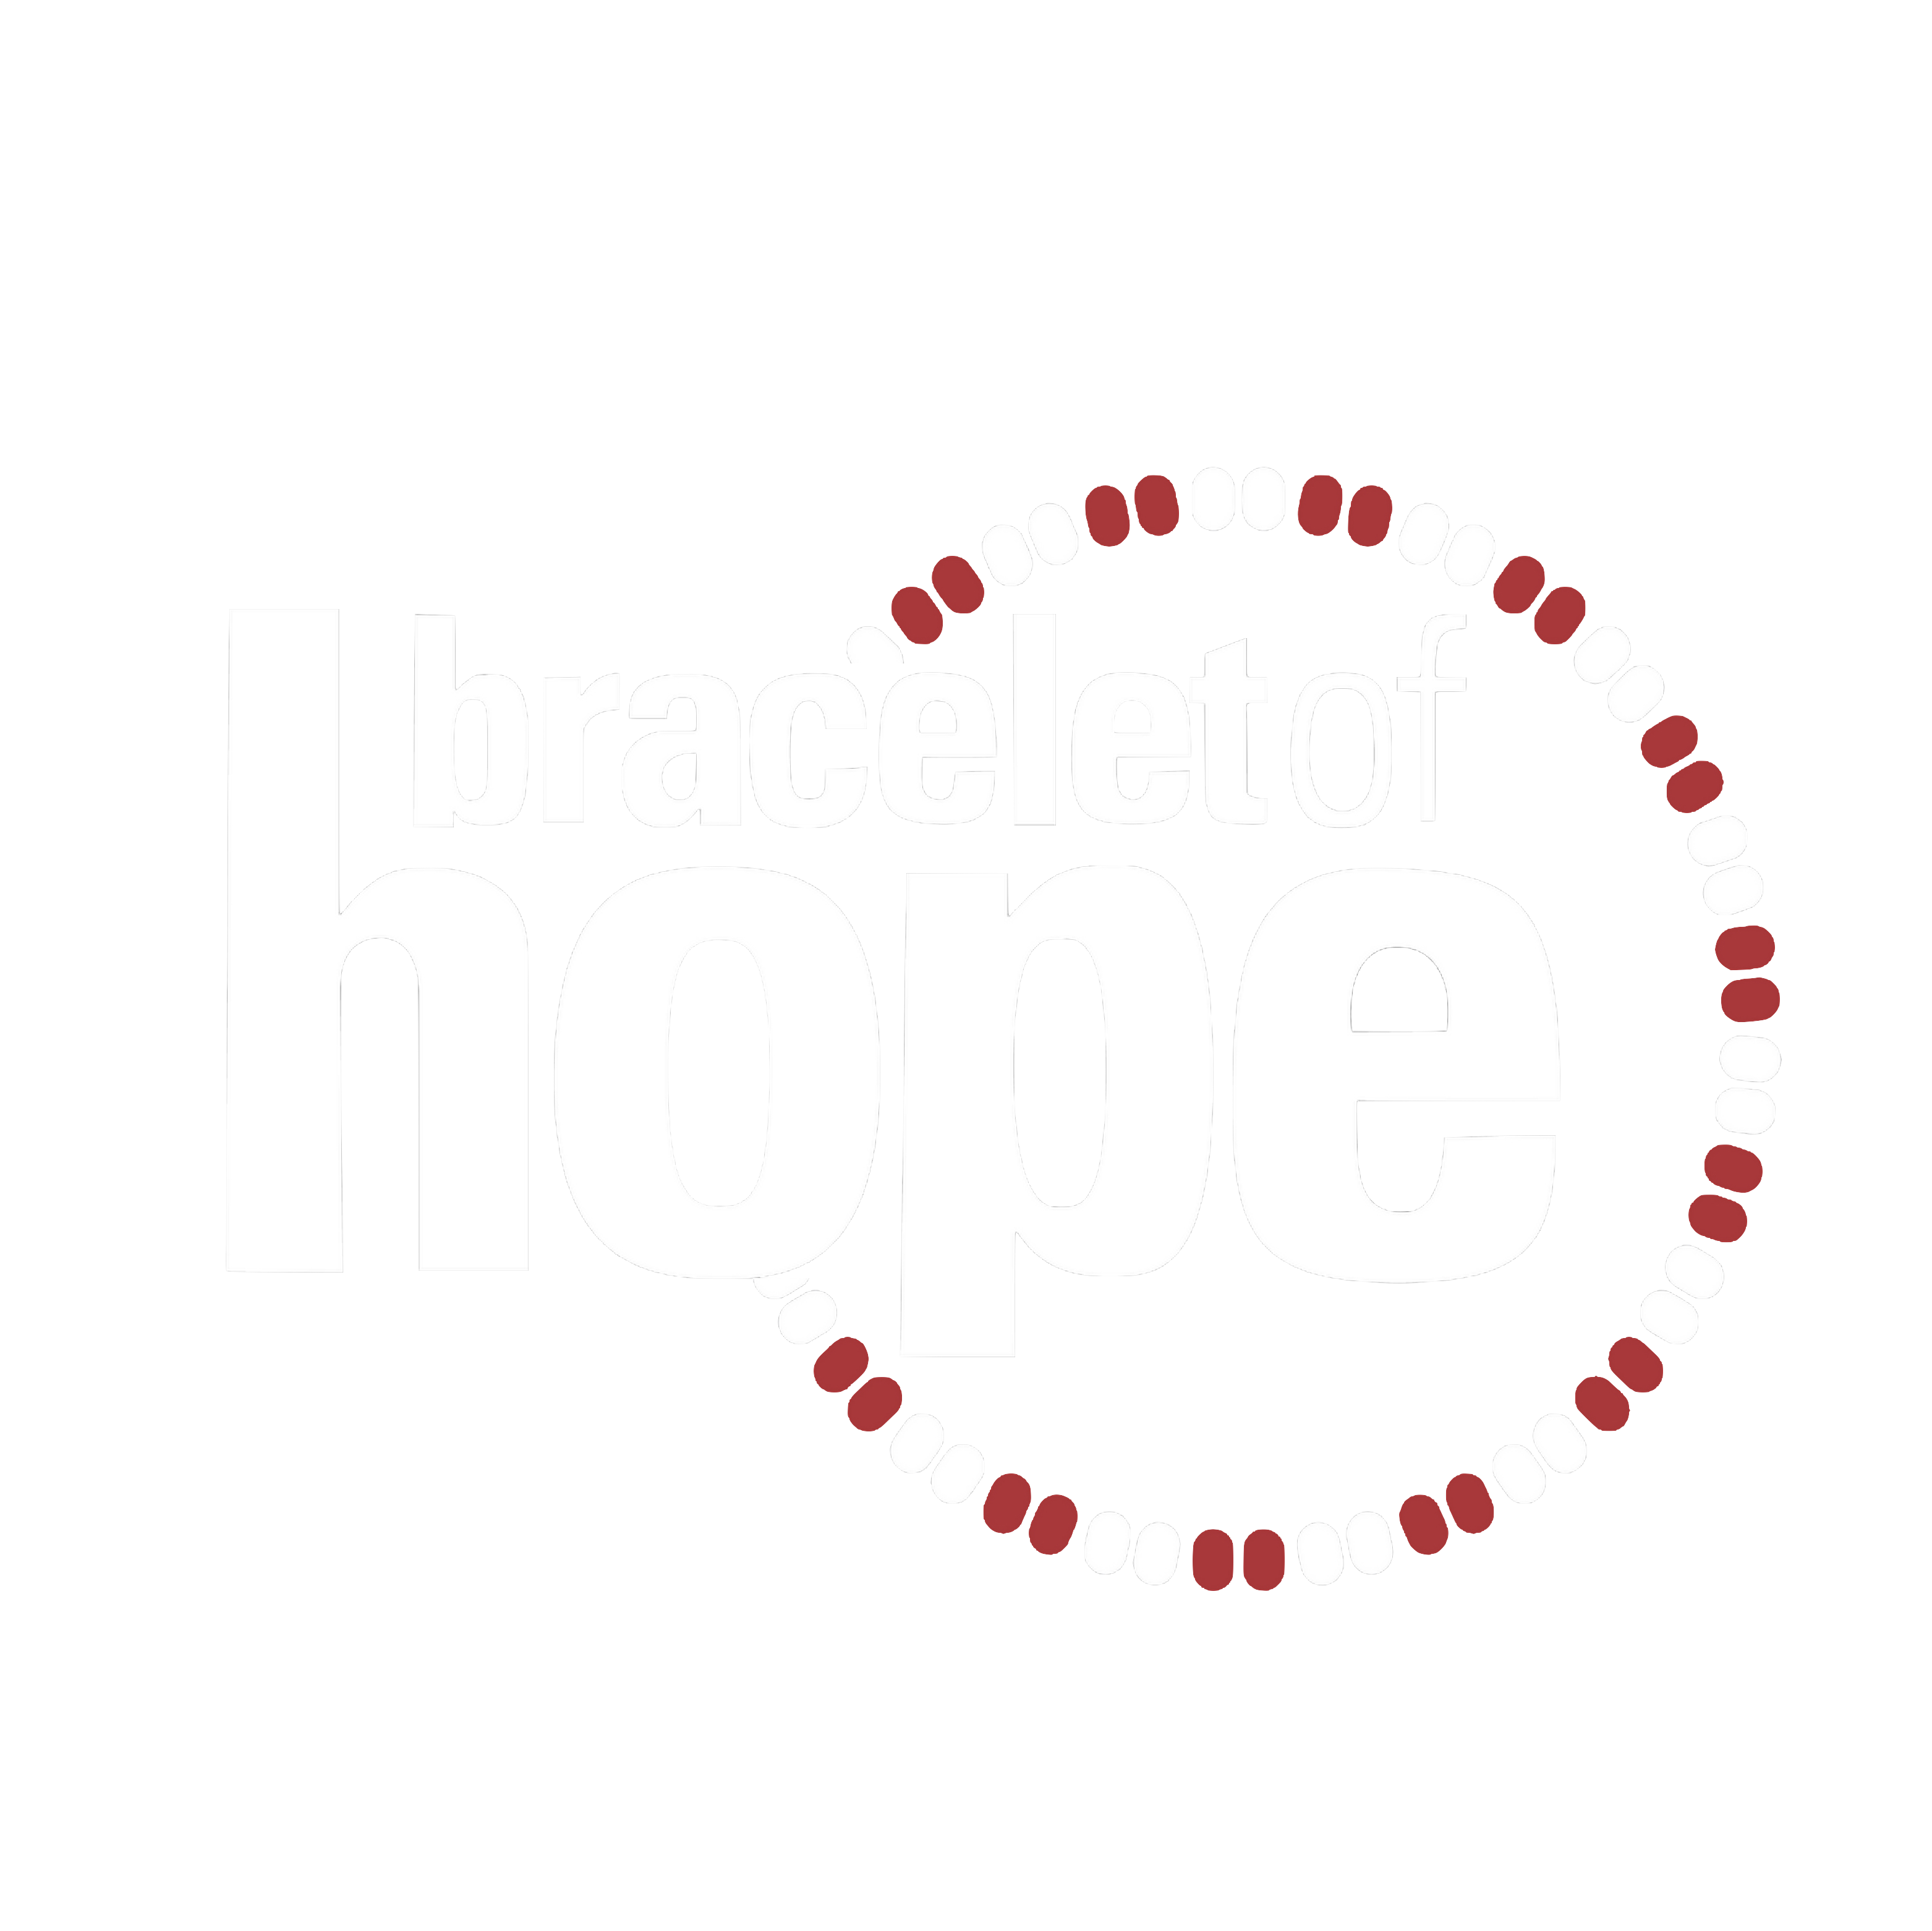 Bracelet of Hope main logo